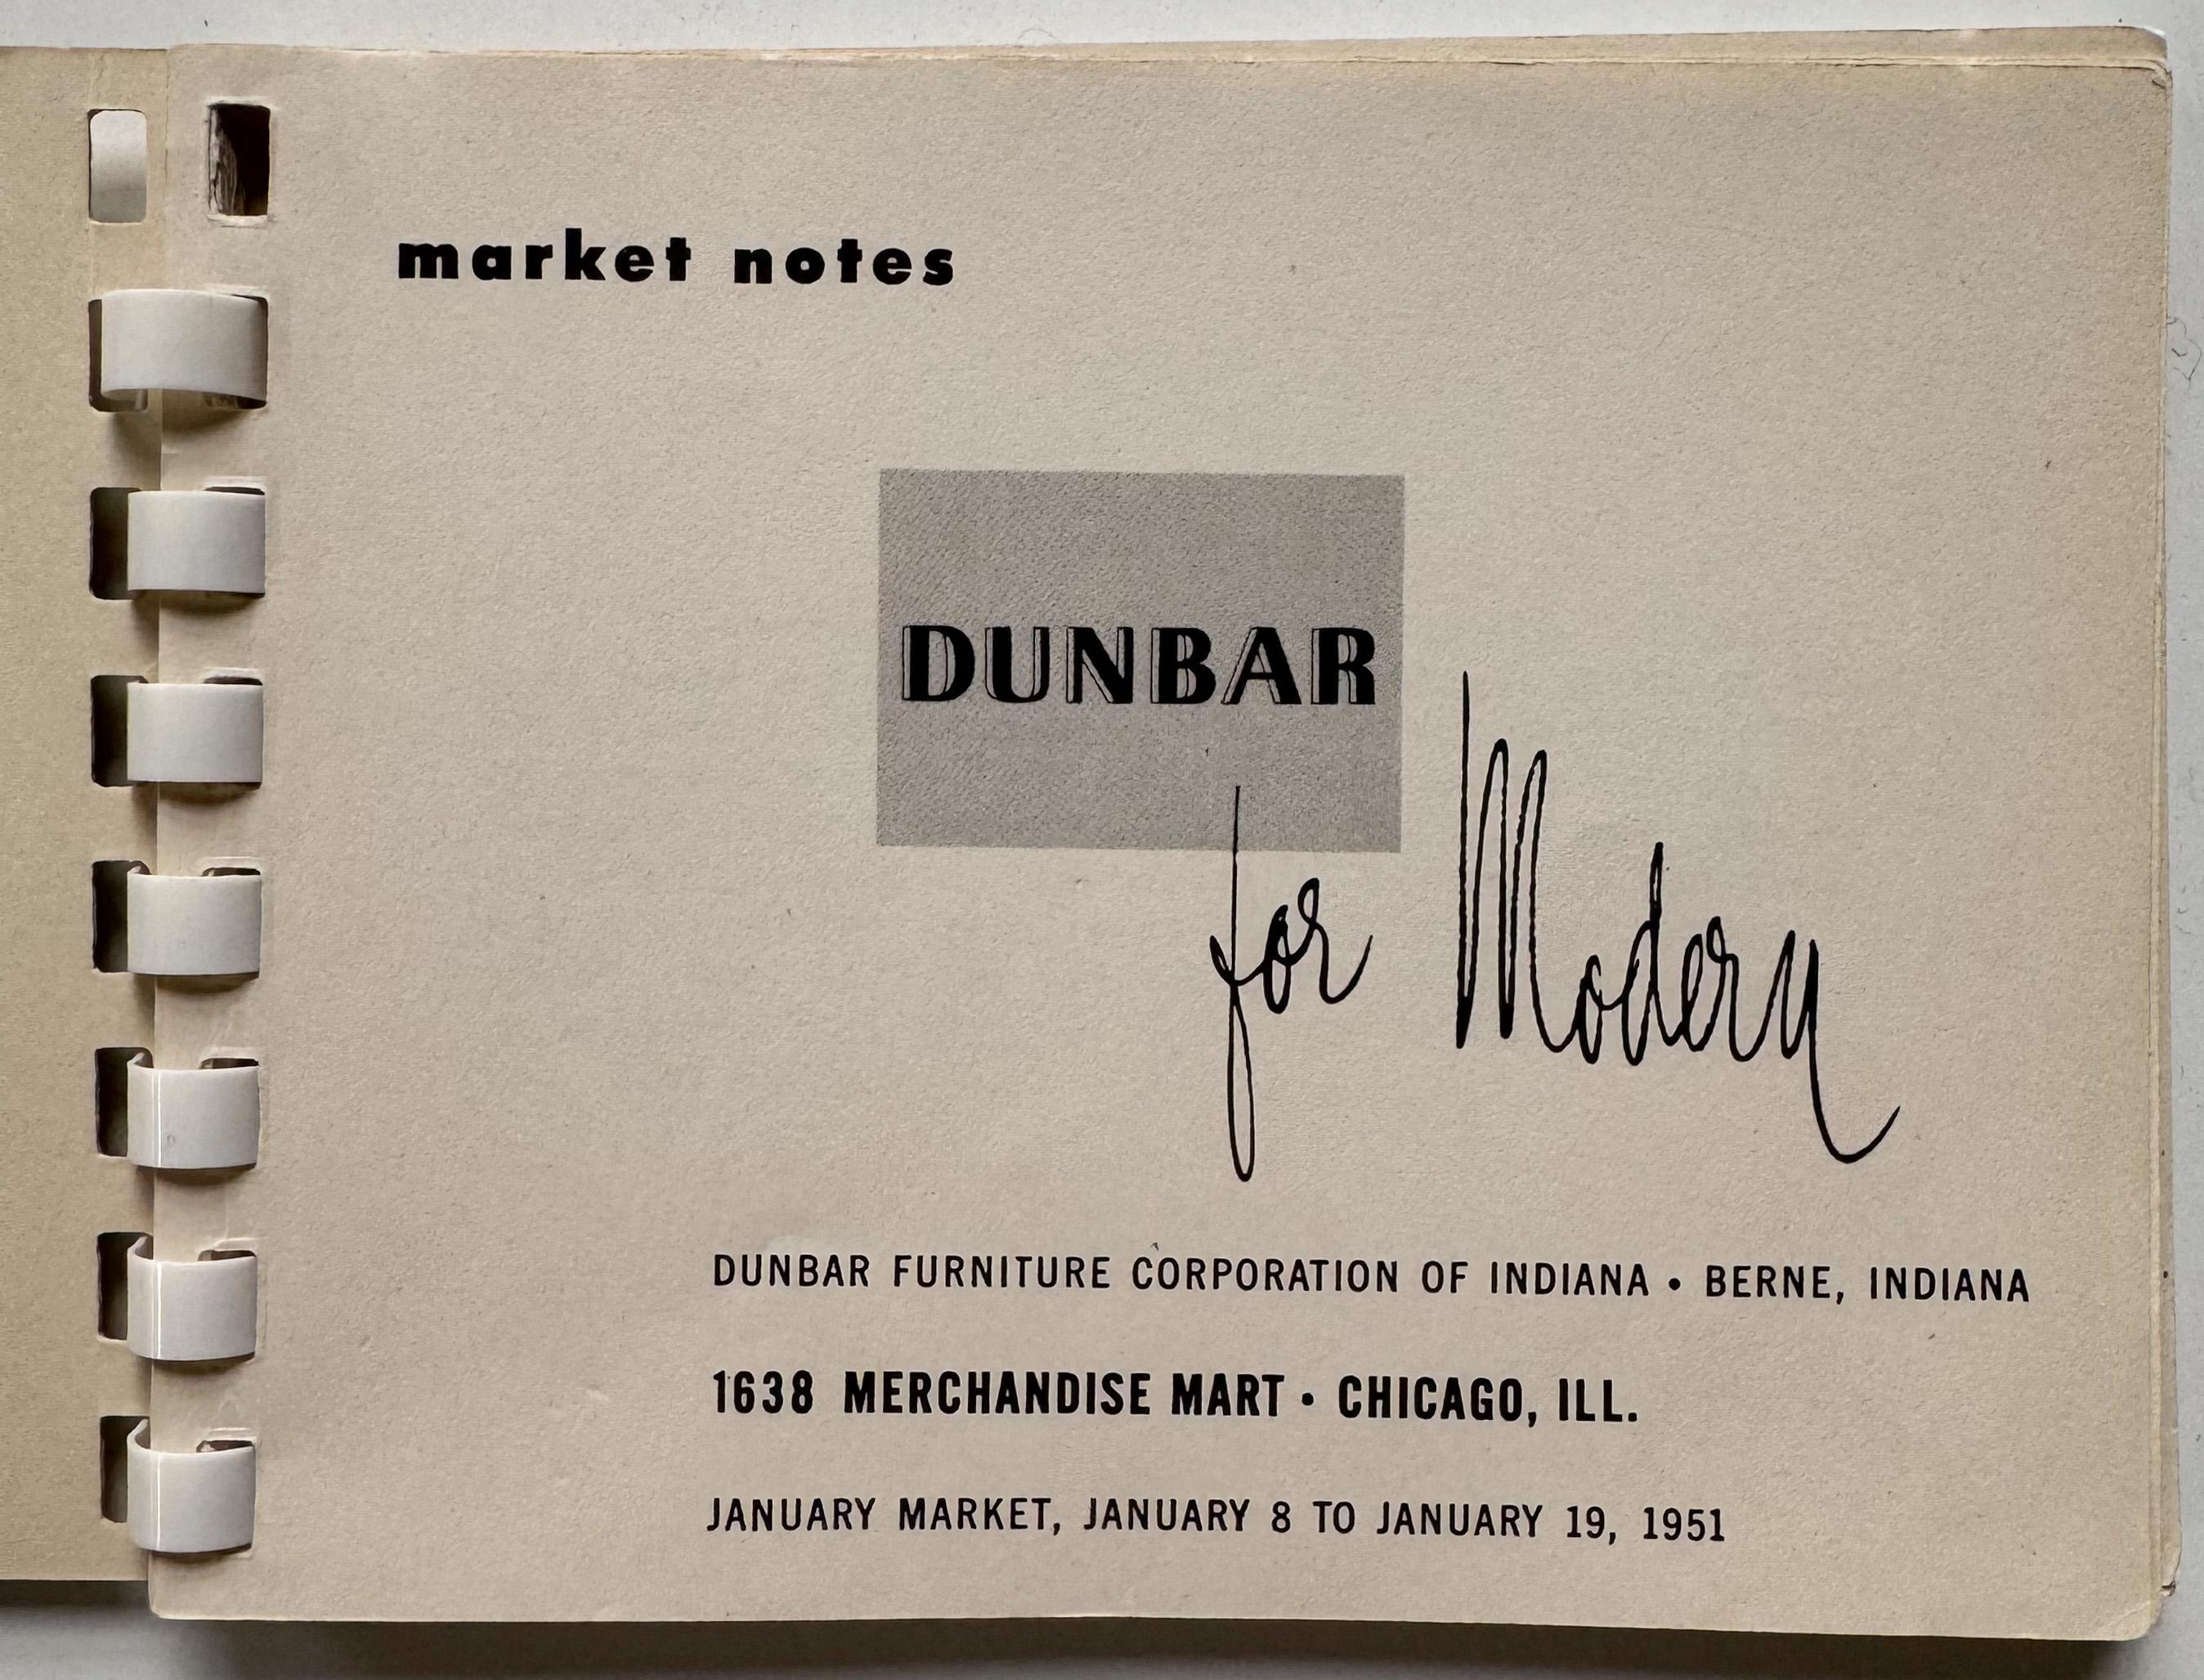 Kleinformatige Broschüre, die im Januar 1951 veröffentlicht wurde und in der 39 Entwürfe von Edward Wormley für Dunbar Furniture vorgestellt wurden, die auf dem Chicago Merchandise Mart präsentiert wurden. Zu den Highlights gehören der Sleepy Hollow